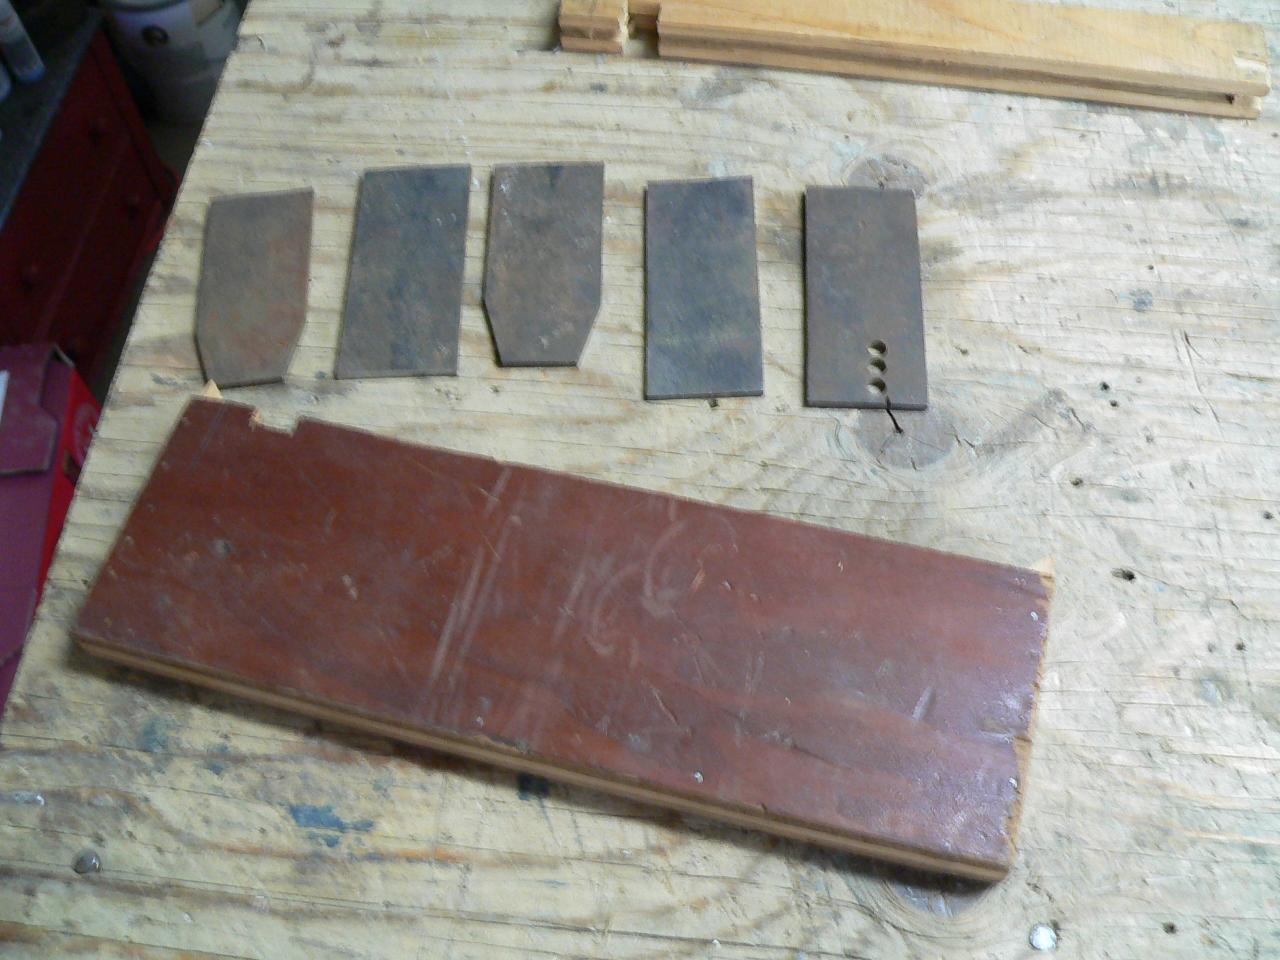 5 blade d'acier pour fabriquez lame de rabot # 4617.90 